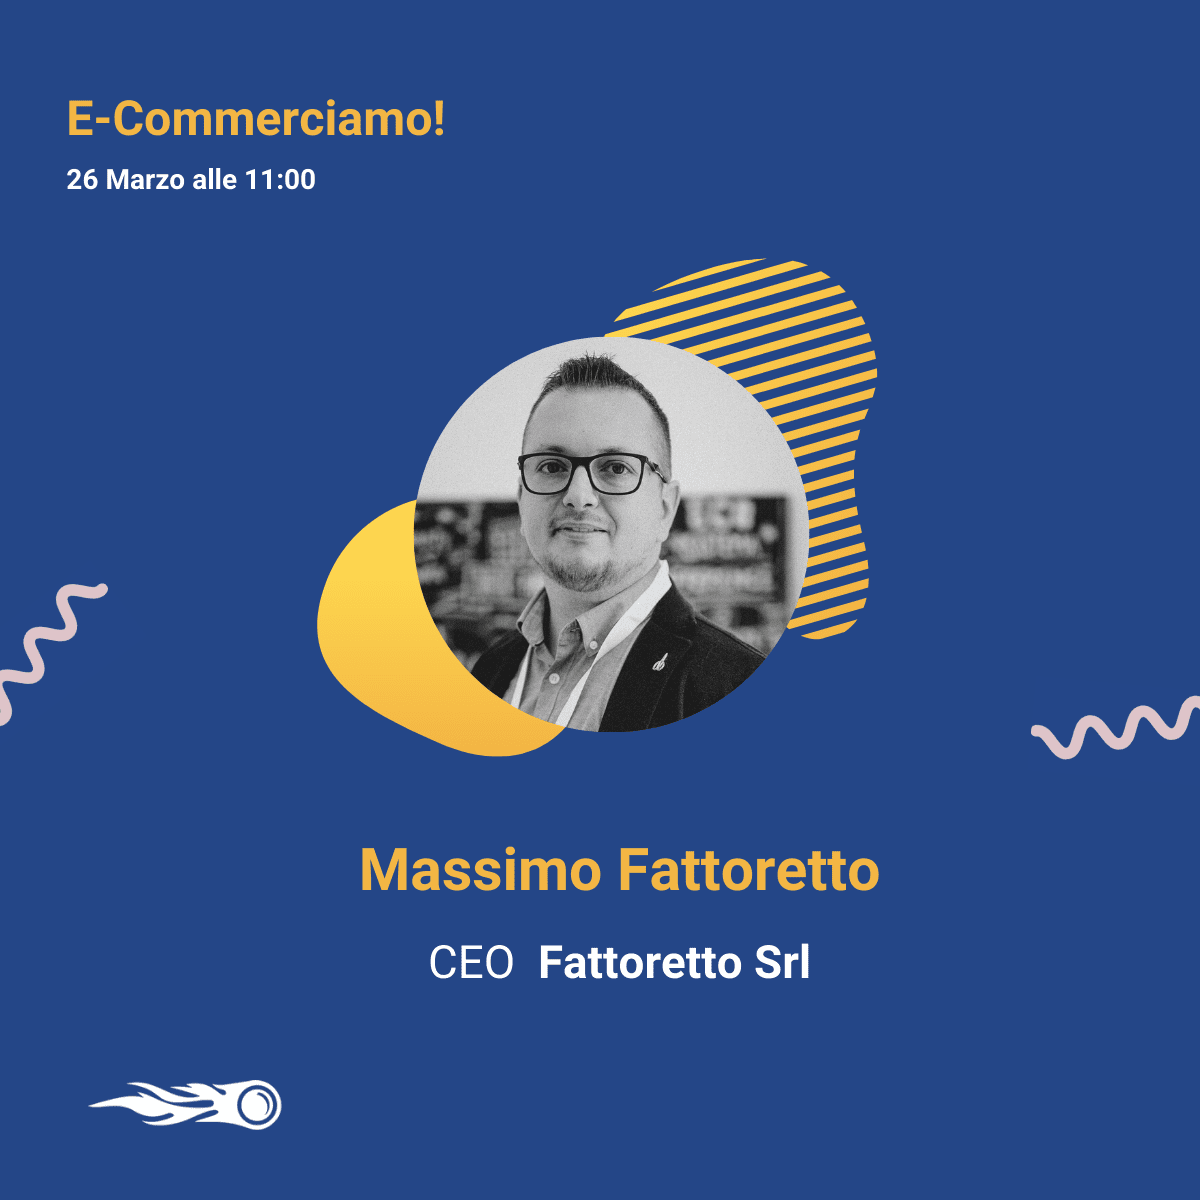  Massimo Fattoretto ospite a E-commerciamo!